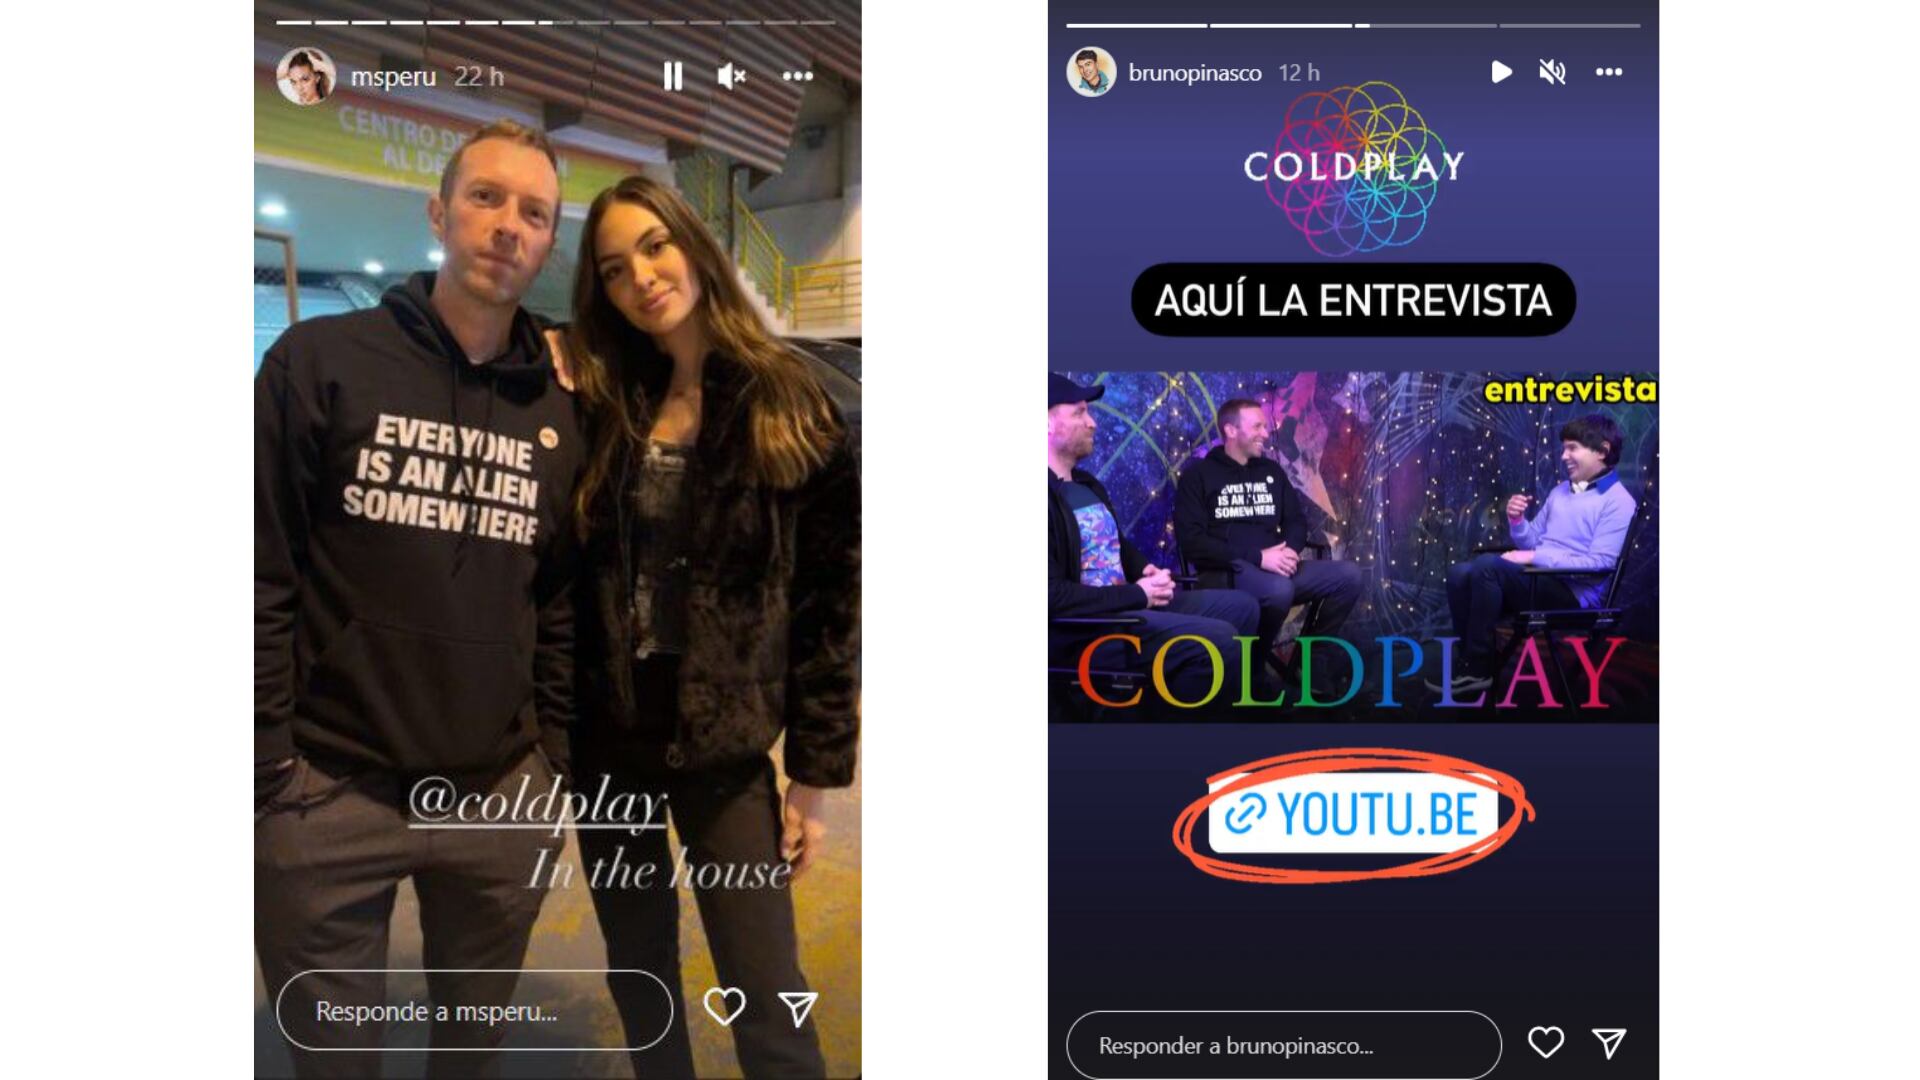 Natalie Vértiz y Bruno Pinasco entrevistando a Coldplay. (Instagram)